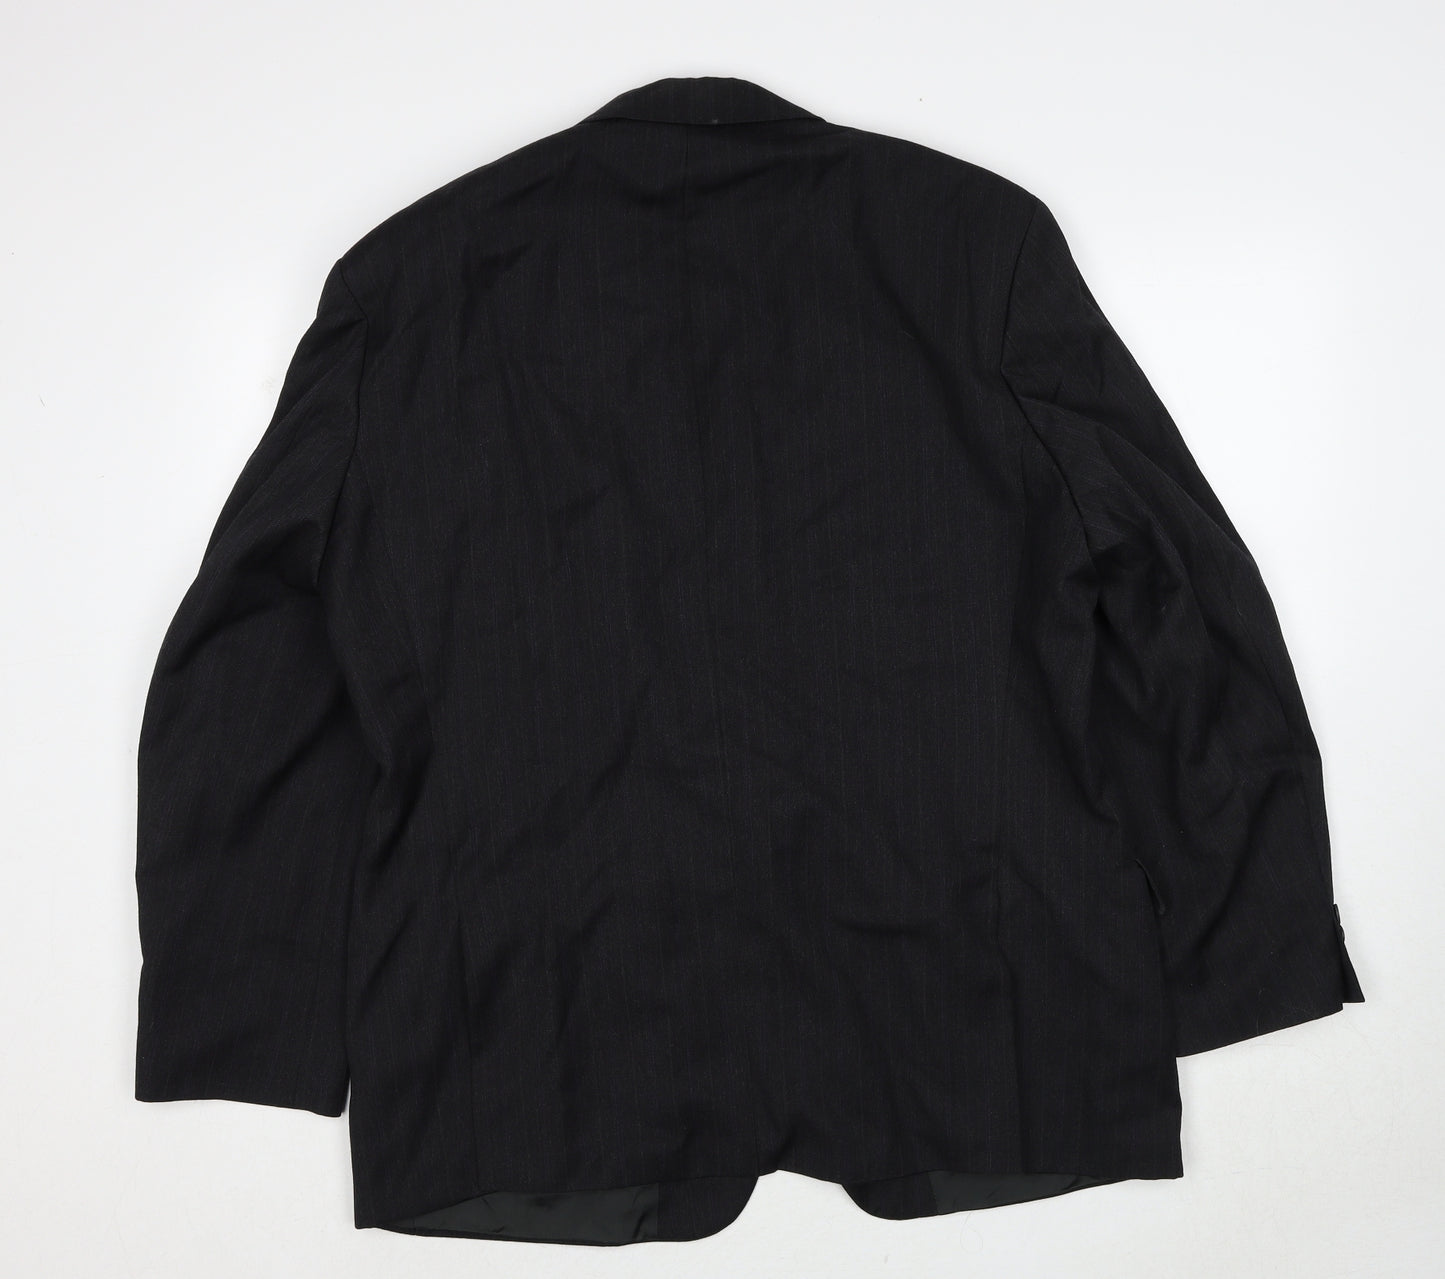 Marks and Spencer Mens Black Striped Polyester Jacket Suit Jacket Size 44 Regular